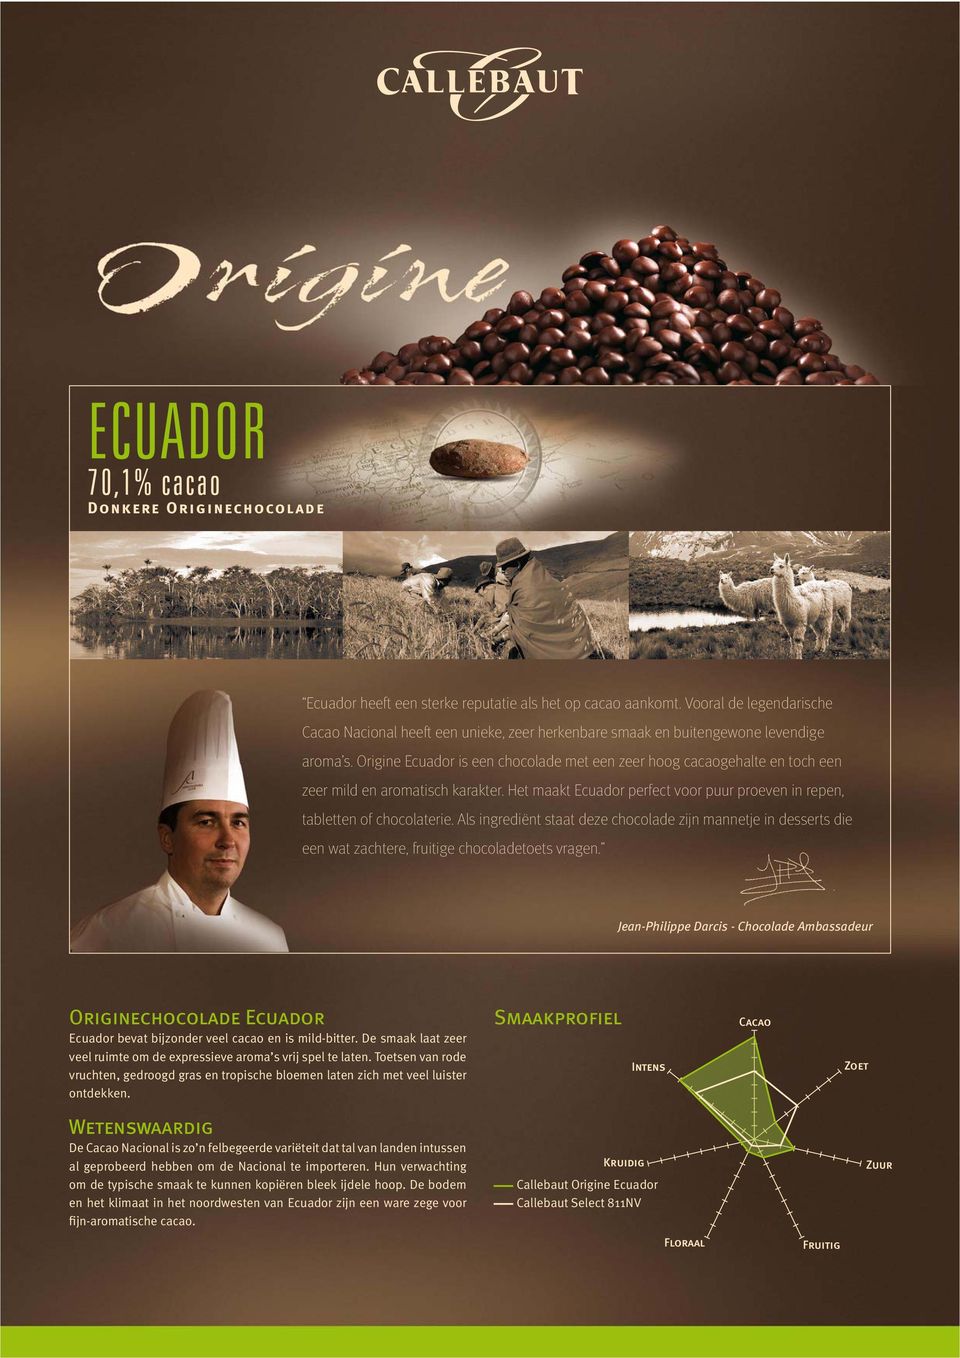 Origine Ecuador is een chocolade met een zeer hoog cacaogehalte en toch een zeer mild en aromatisch karakter. Het maakt Ecuador perfect voor puur proeven in repen, tabletten of chocolaterie.